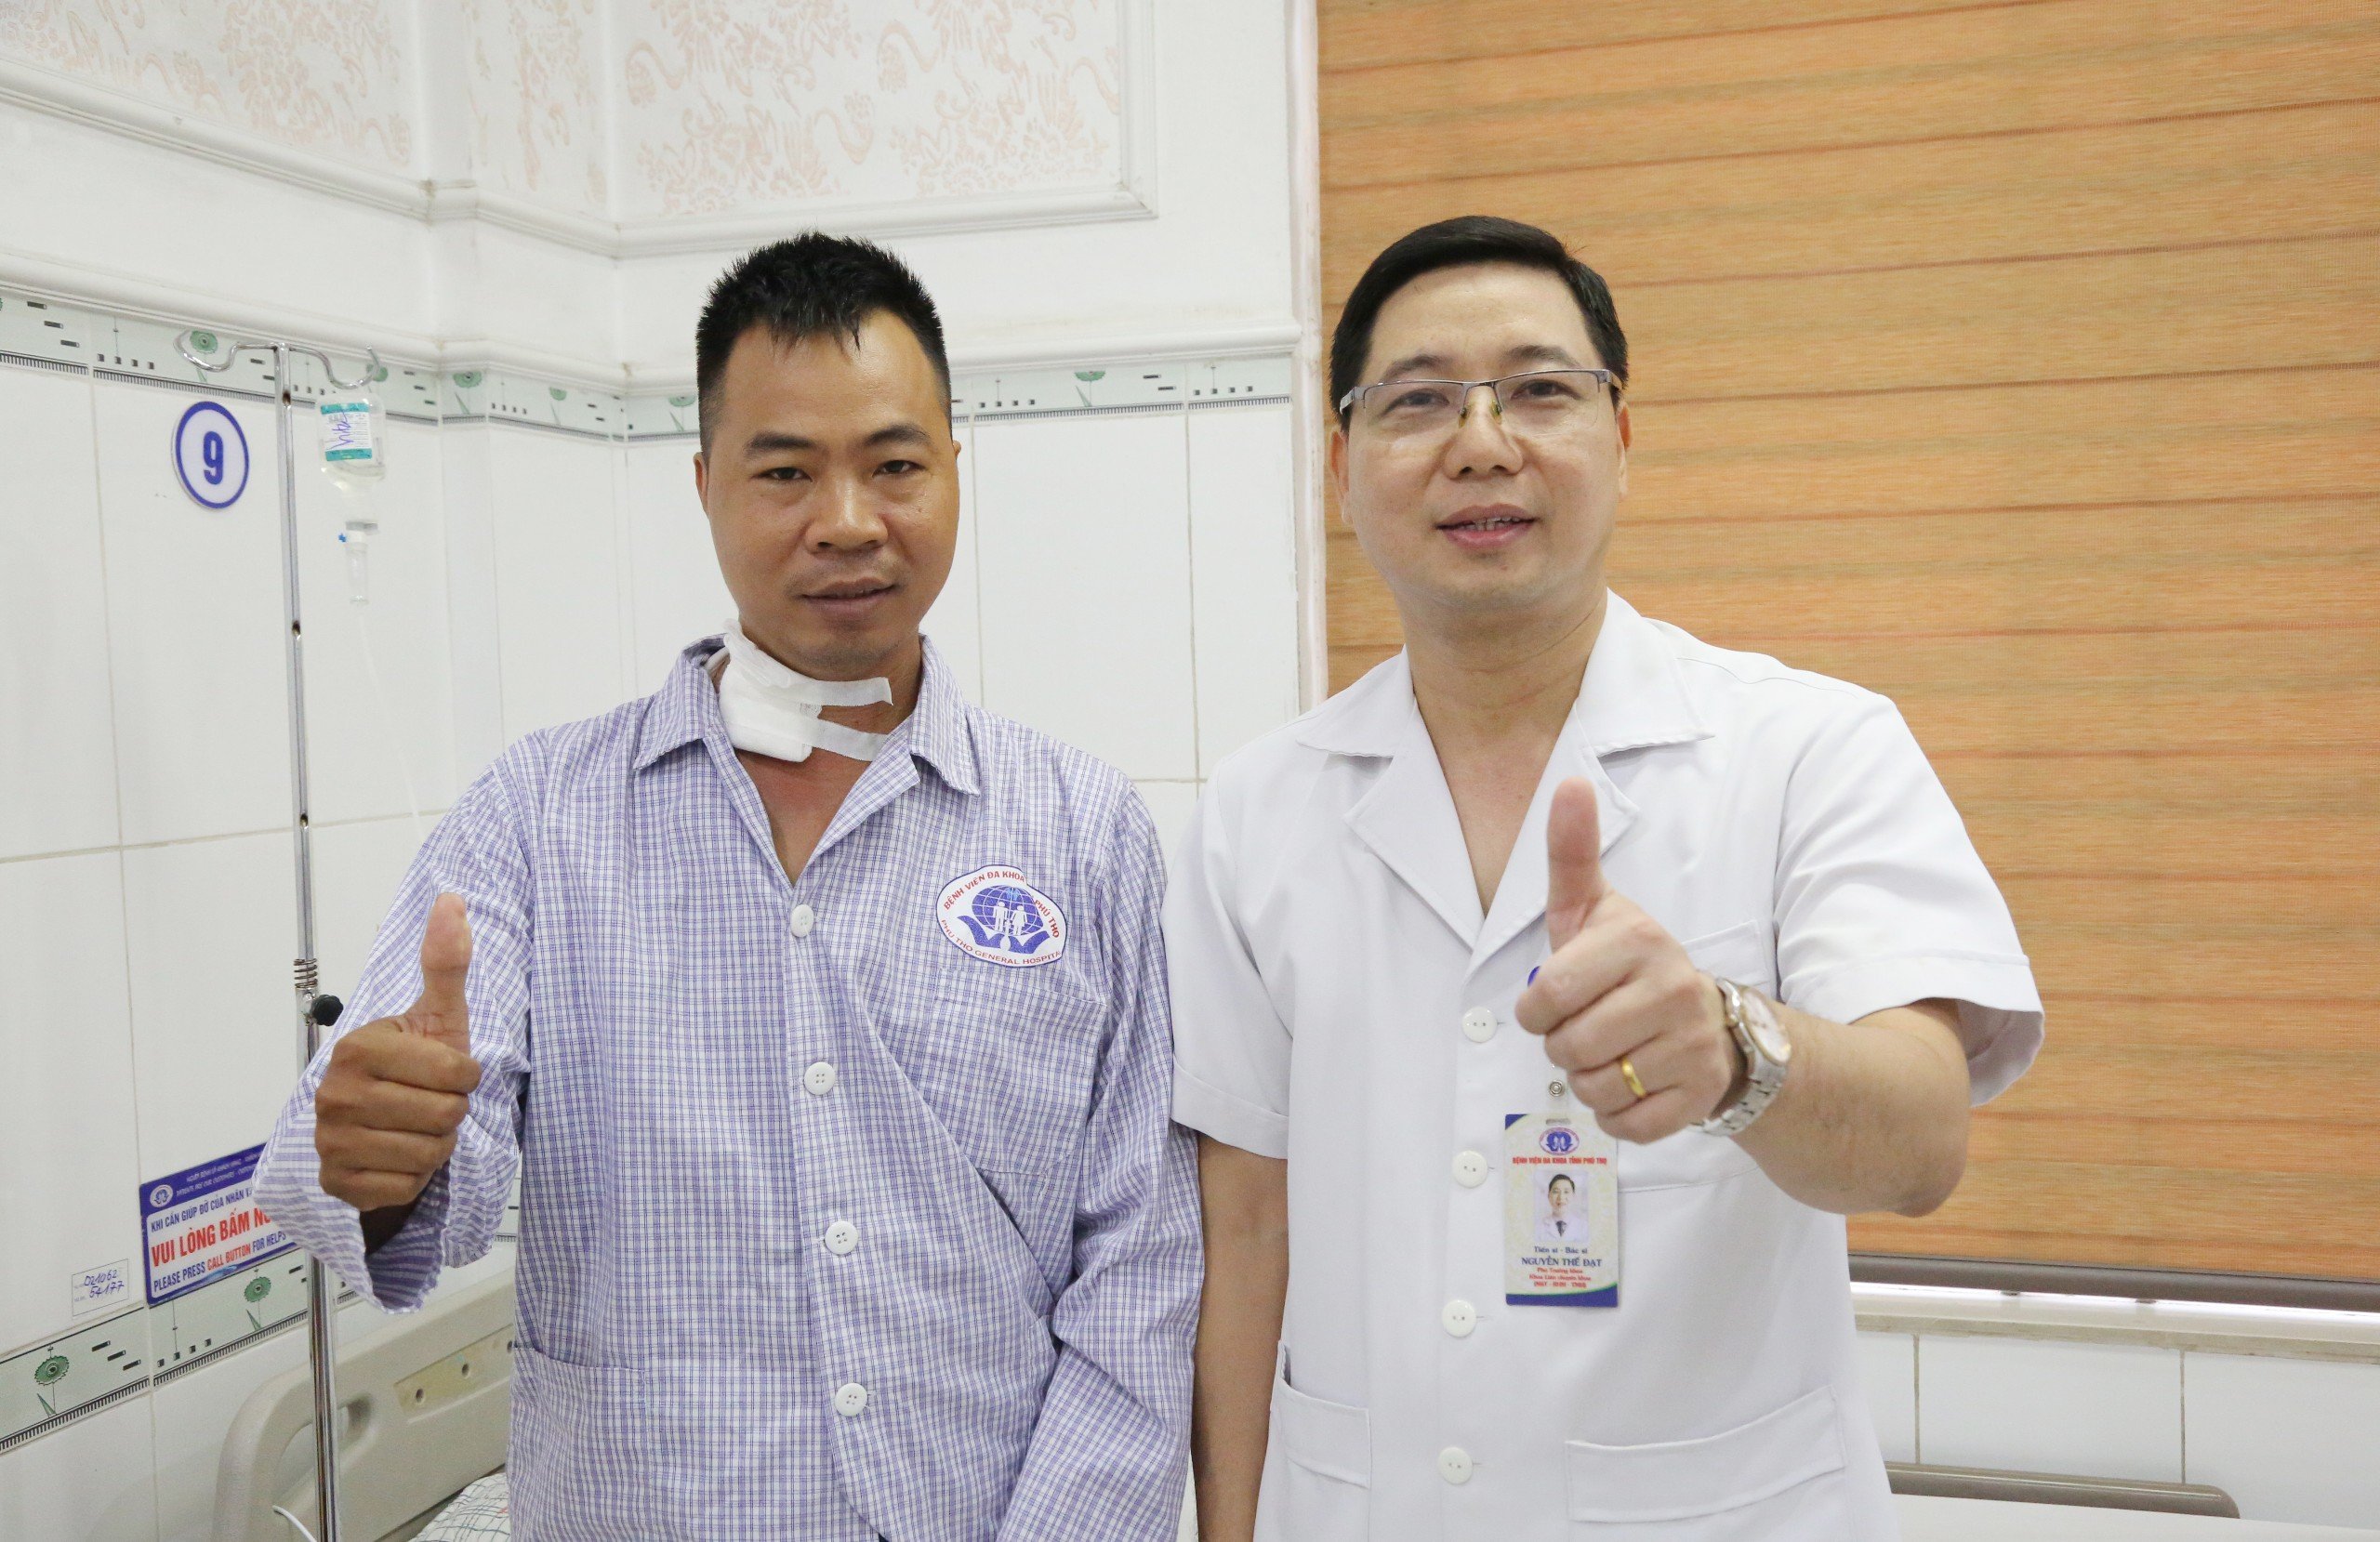 Người bệnh chụp hình cùng TS. BS. Nguyễn Thế Đạt trước ngày ra viện